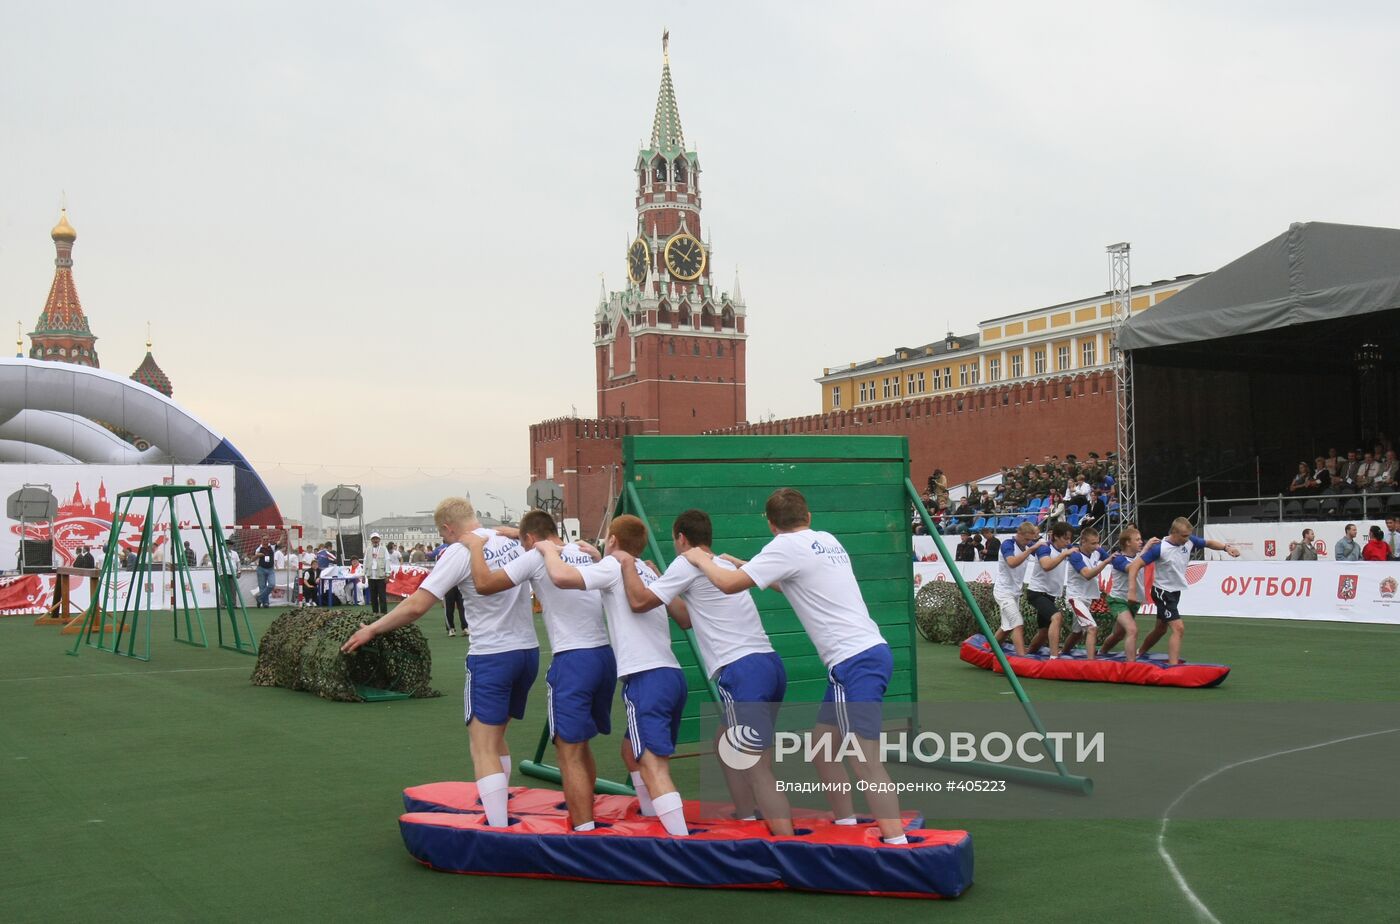 Пятый Военно-спортивный форум на Красной площади